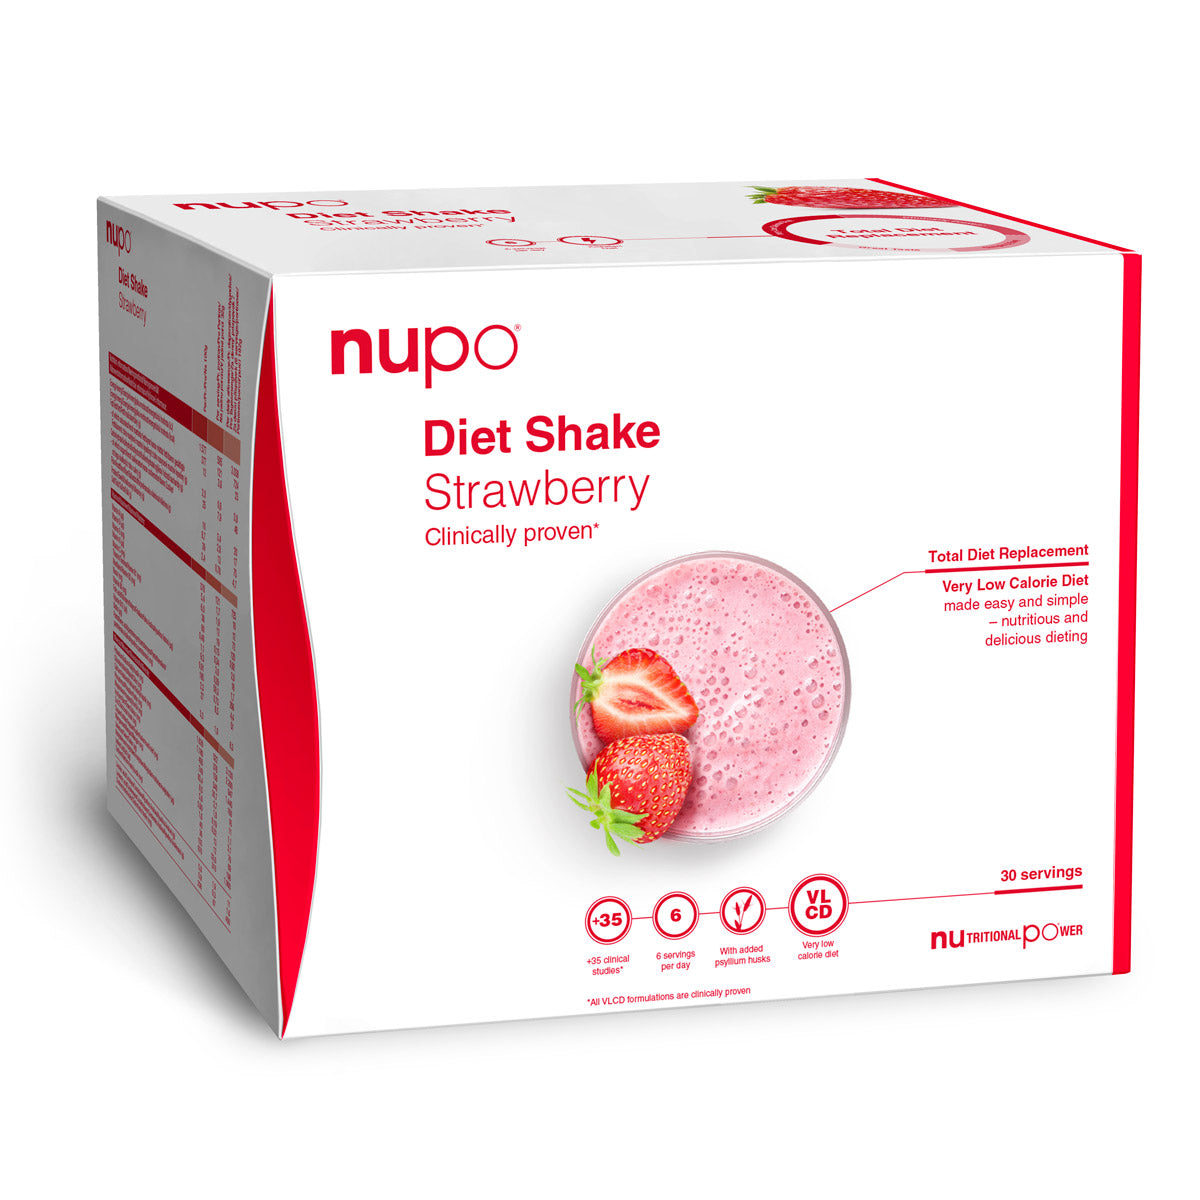 Billede af Nupo Diet Shake Value Pack (960g) - Strawberry